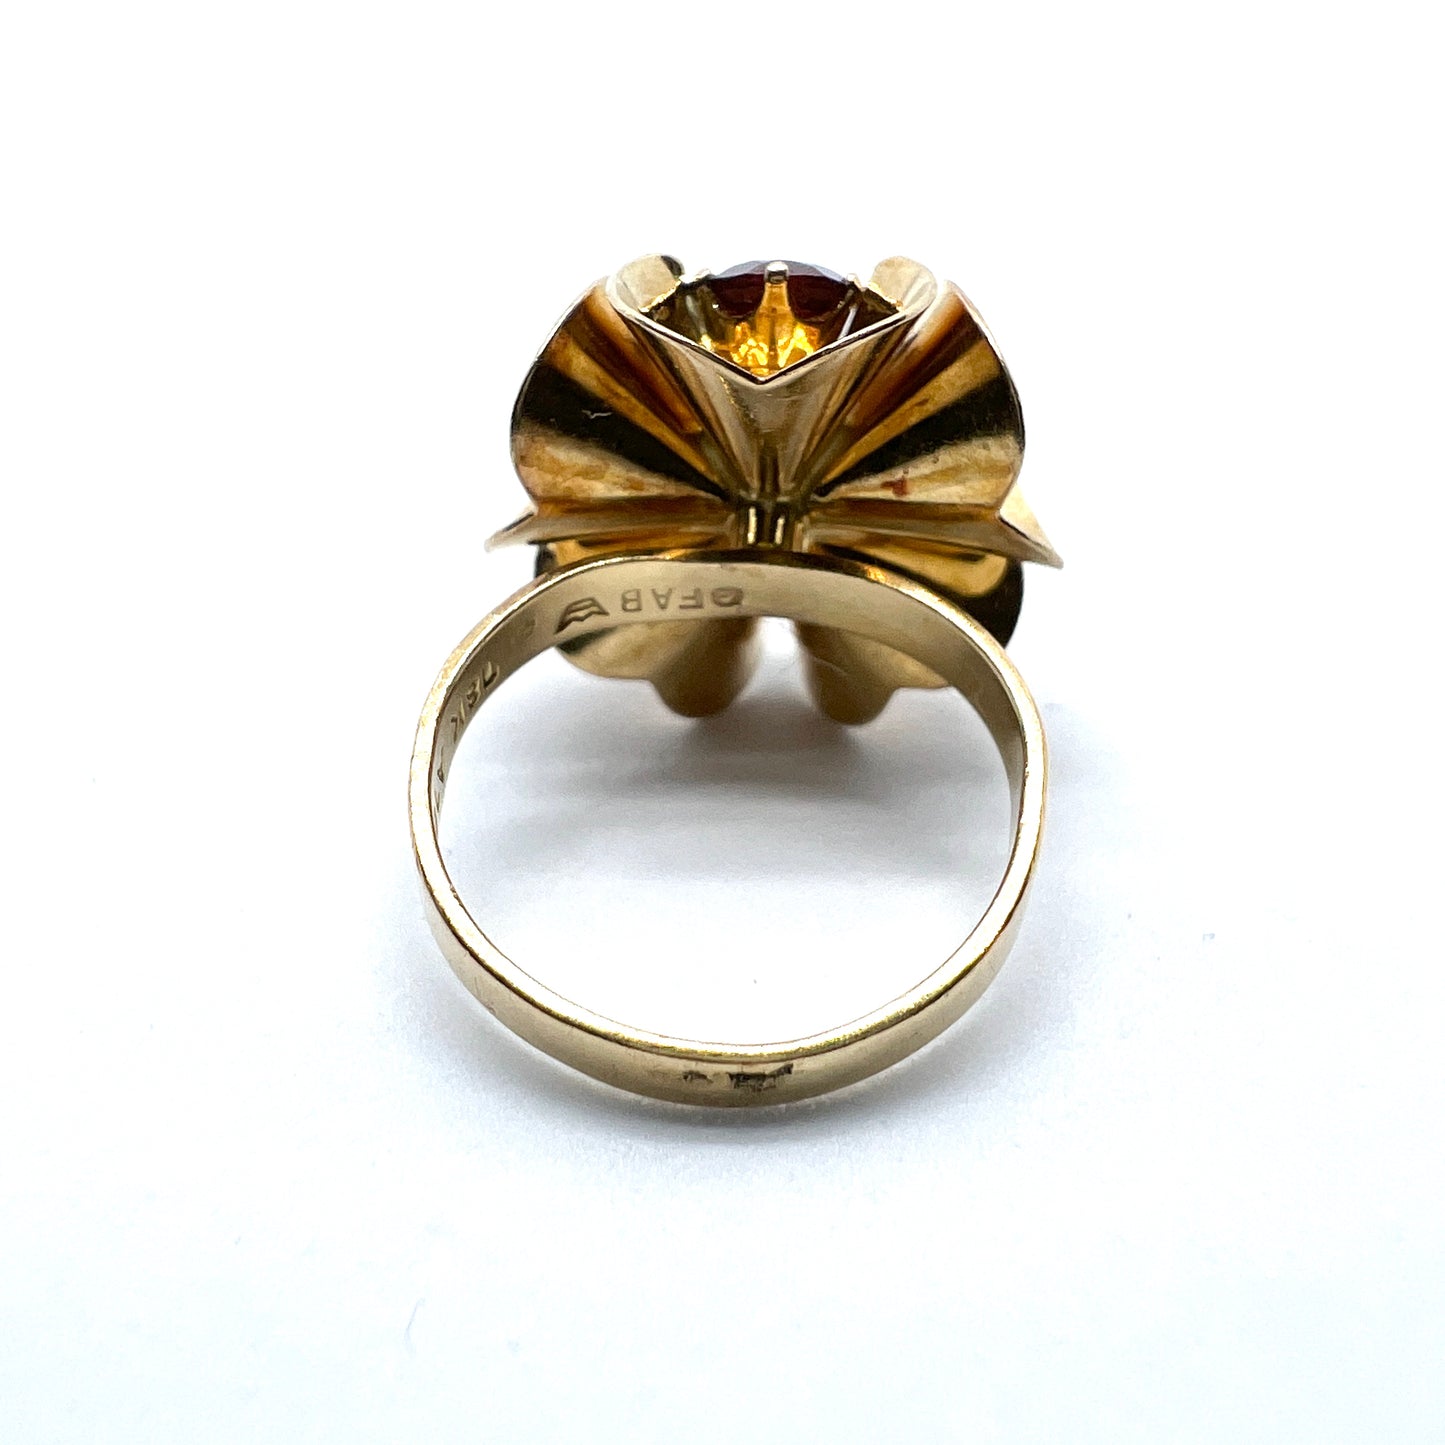 O Pettersson, Sweden year 1975, Vintage 18k Gold Garnet Ring.